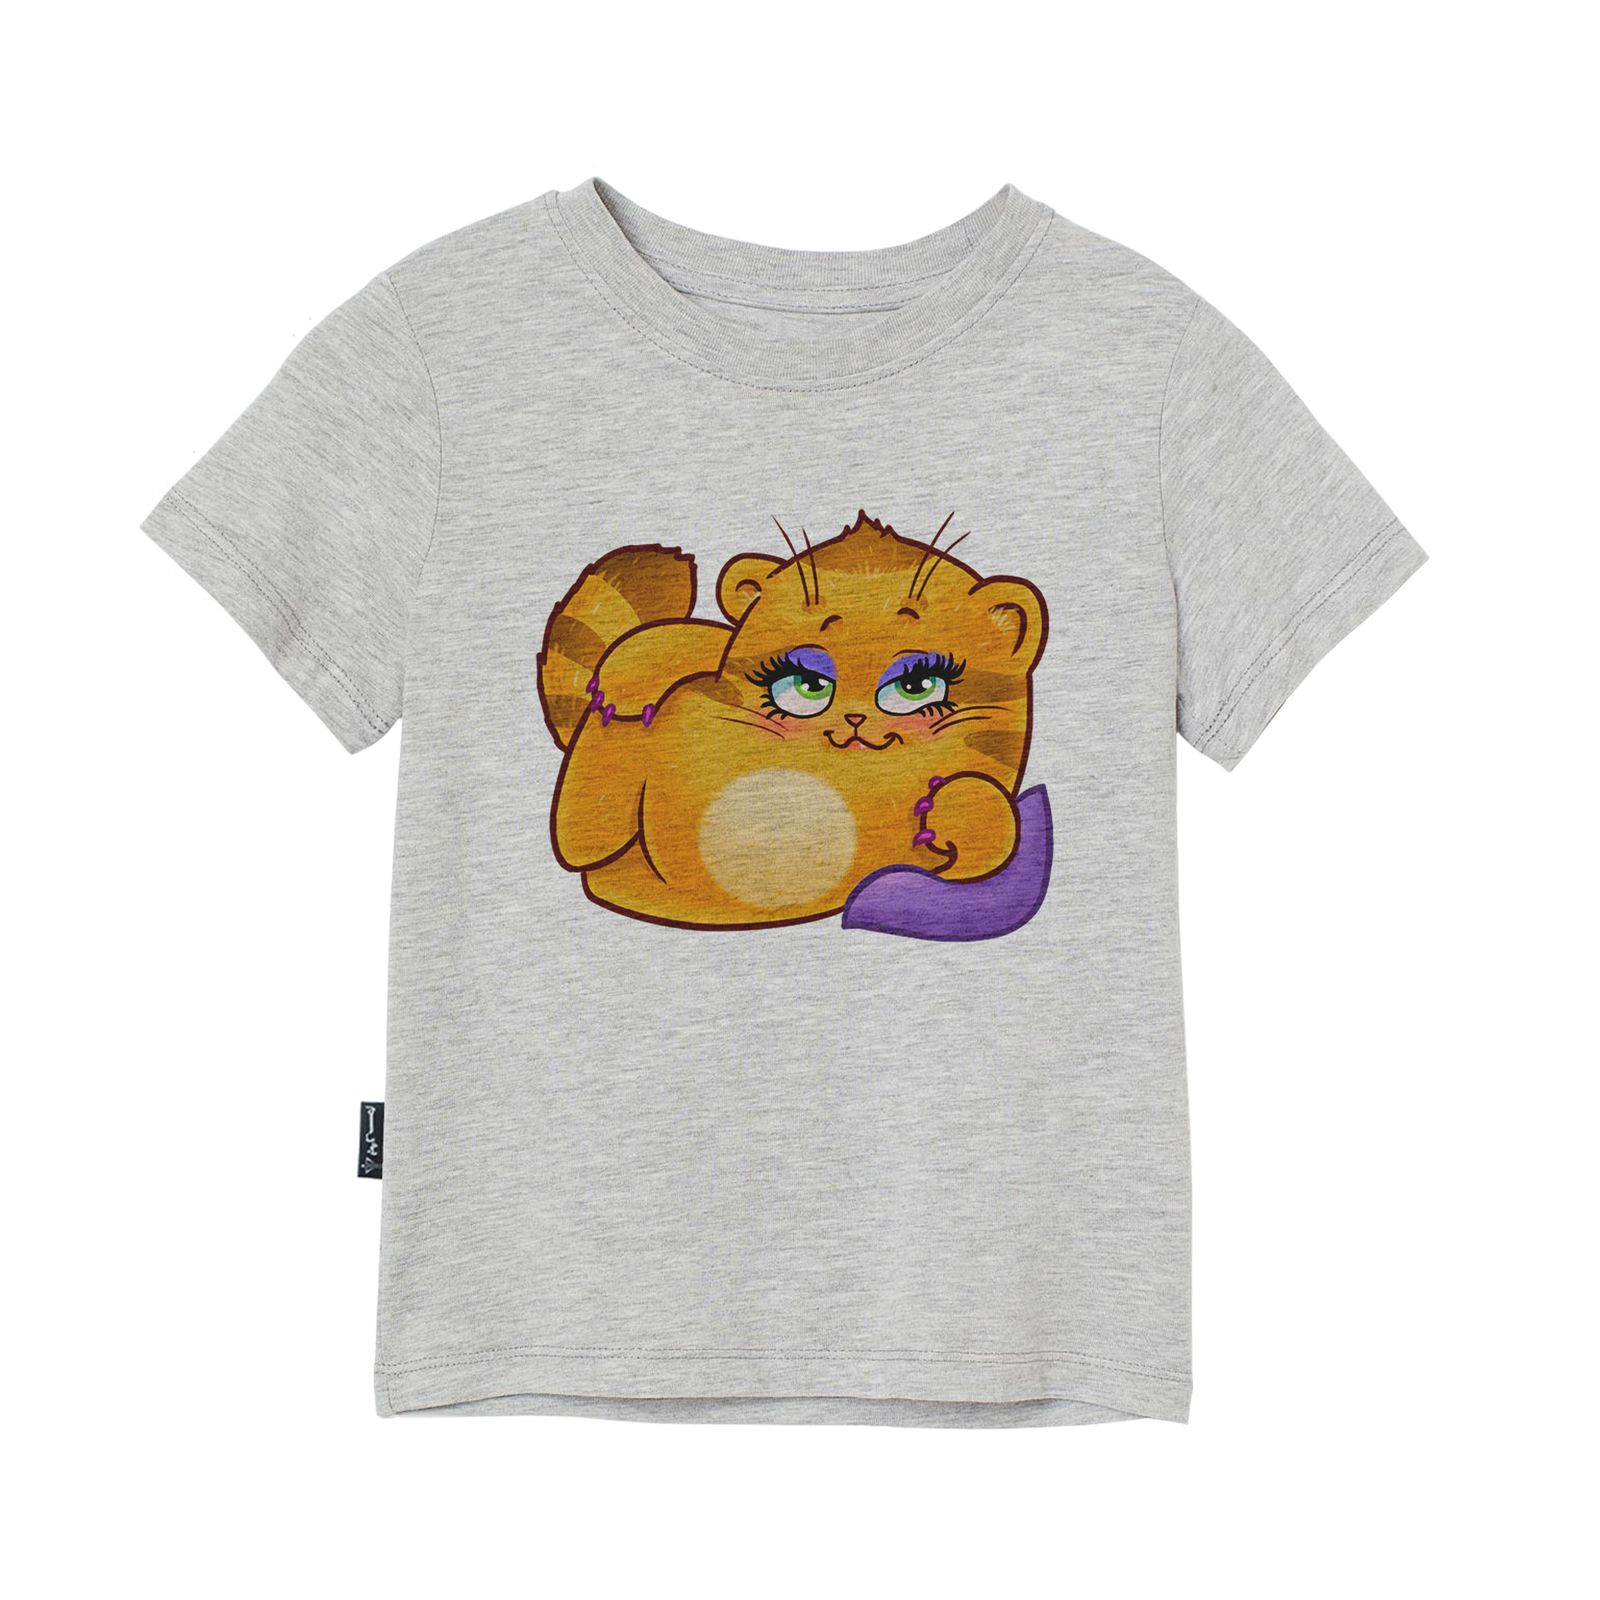 تی شرت آستین کوتاه پسرانه به رسم مدل استیکر گربه کد 1112 -  - 3